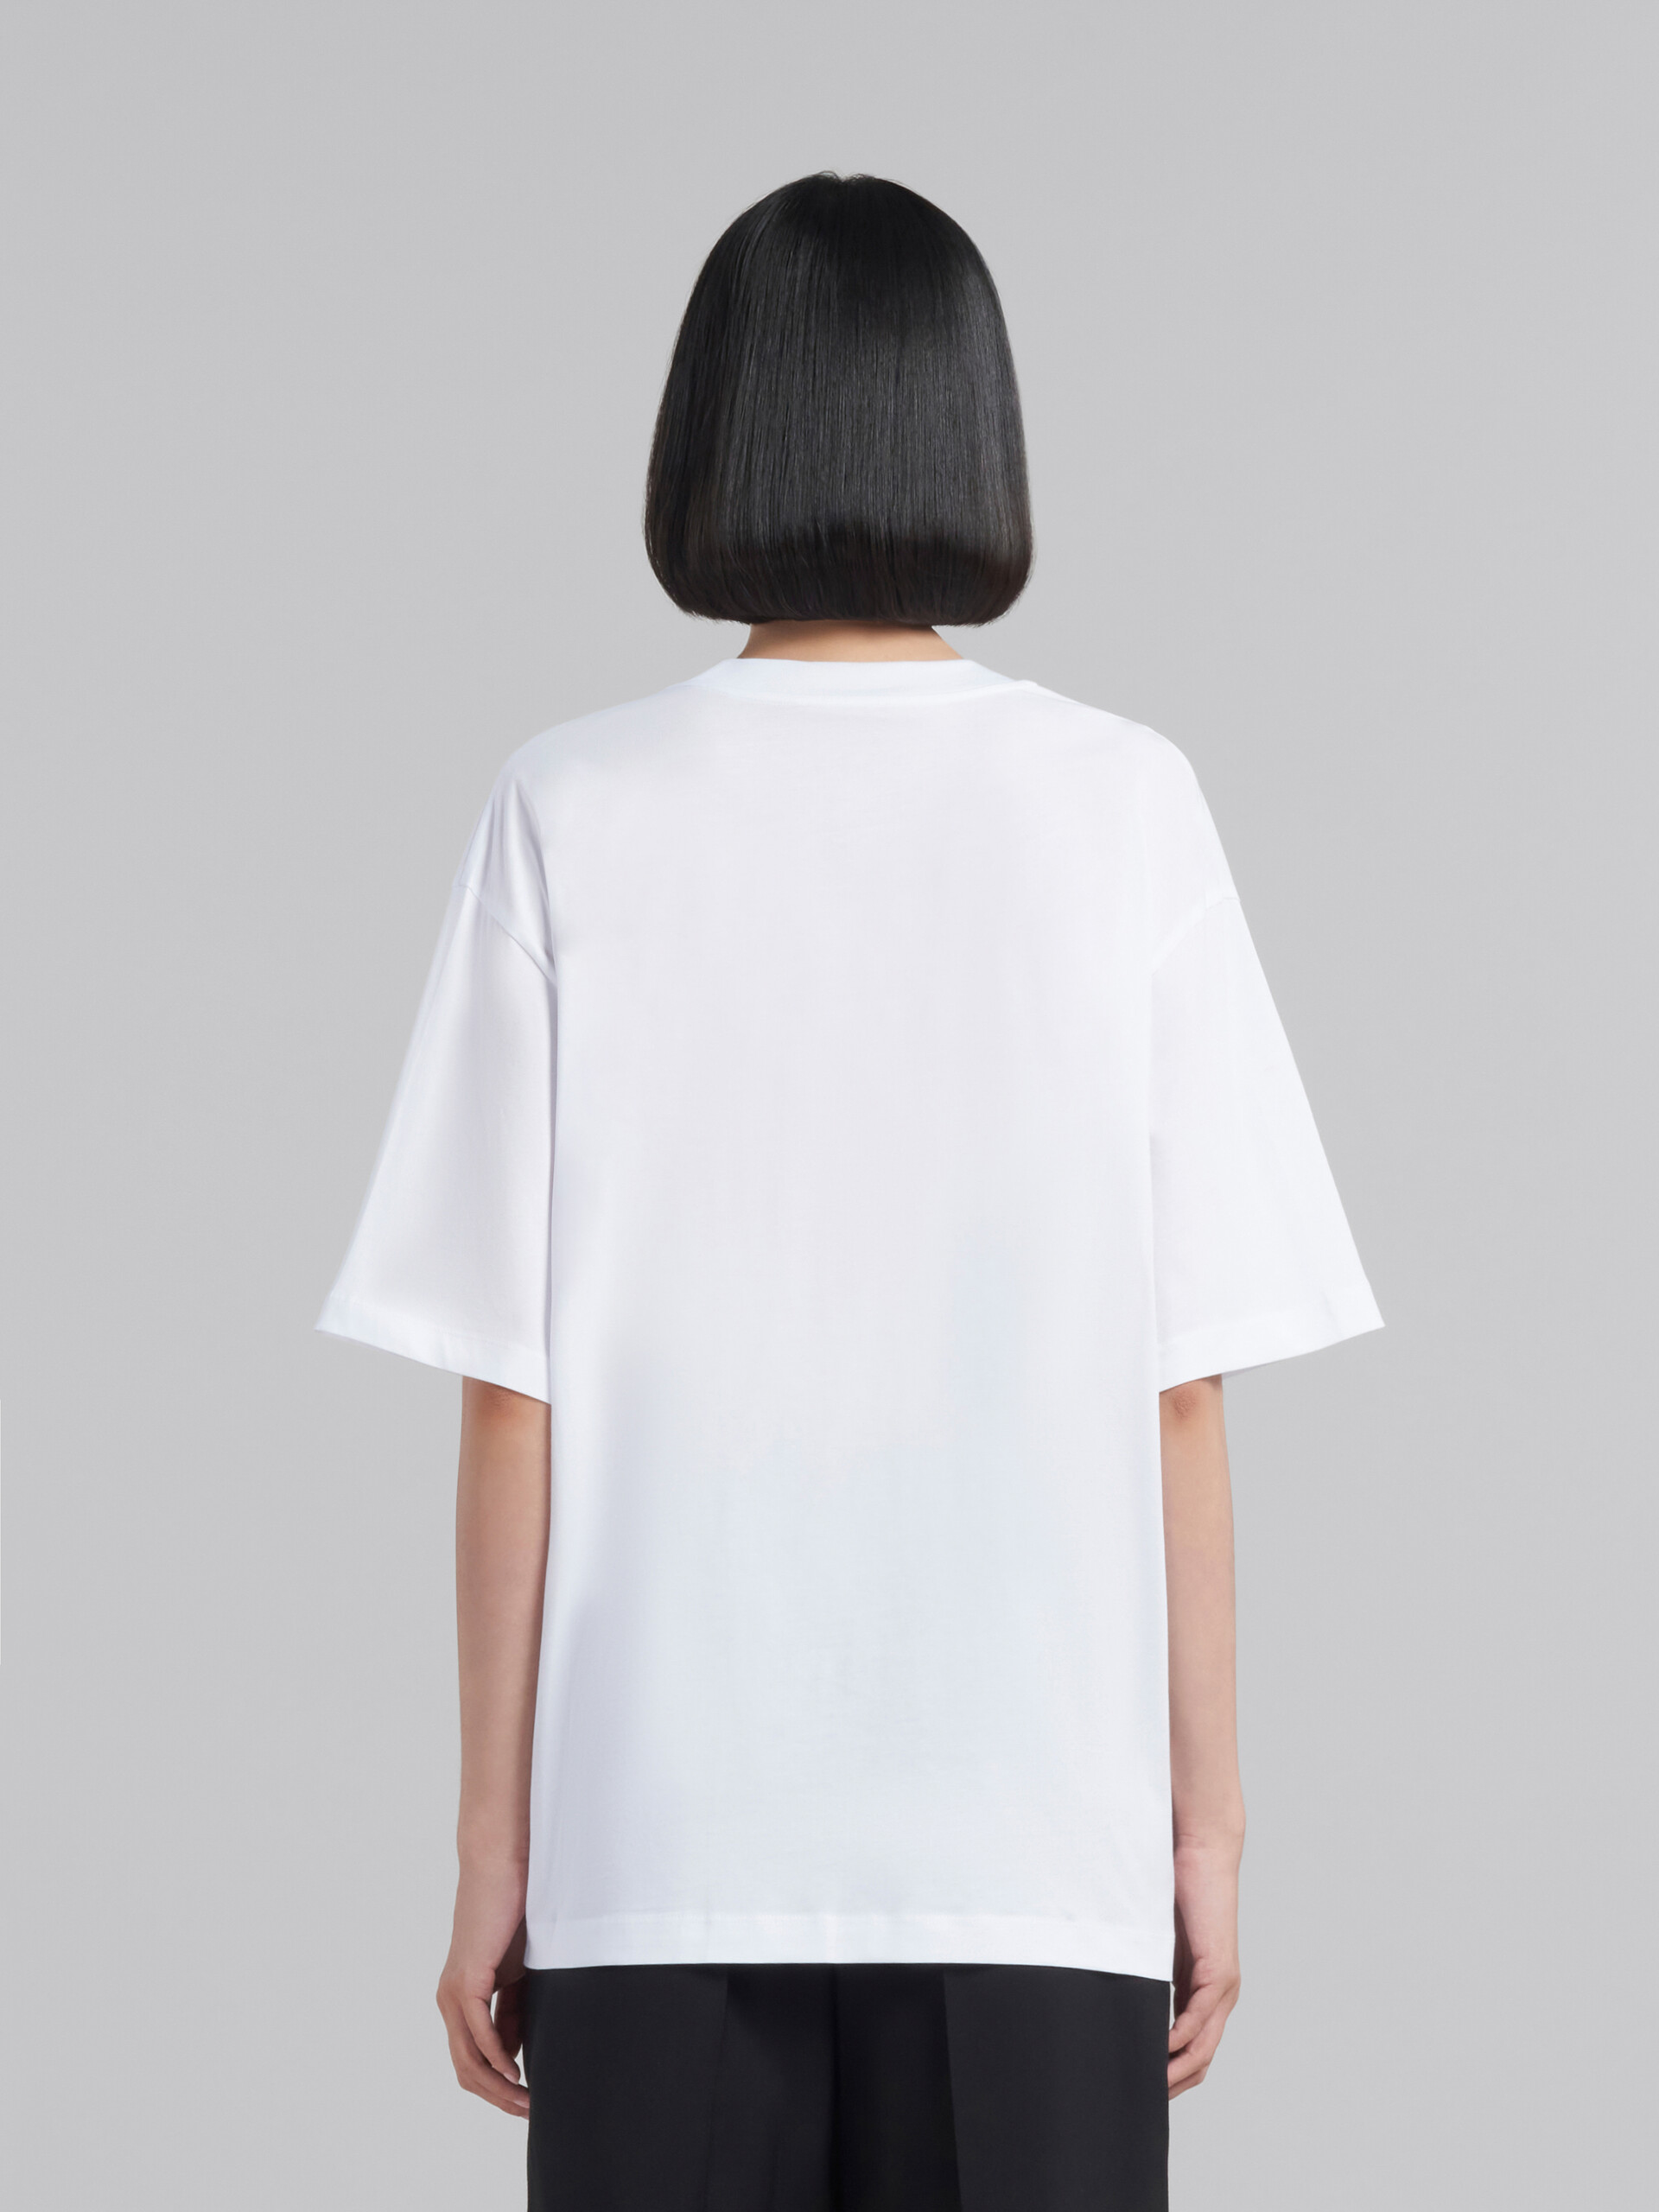 T-shirt en jersey biologique blanc avec logo - T-shirts - Image 3